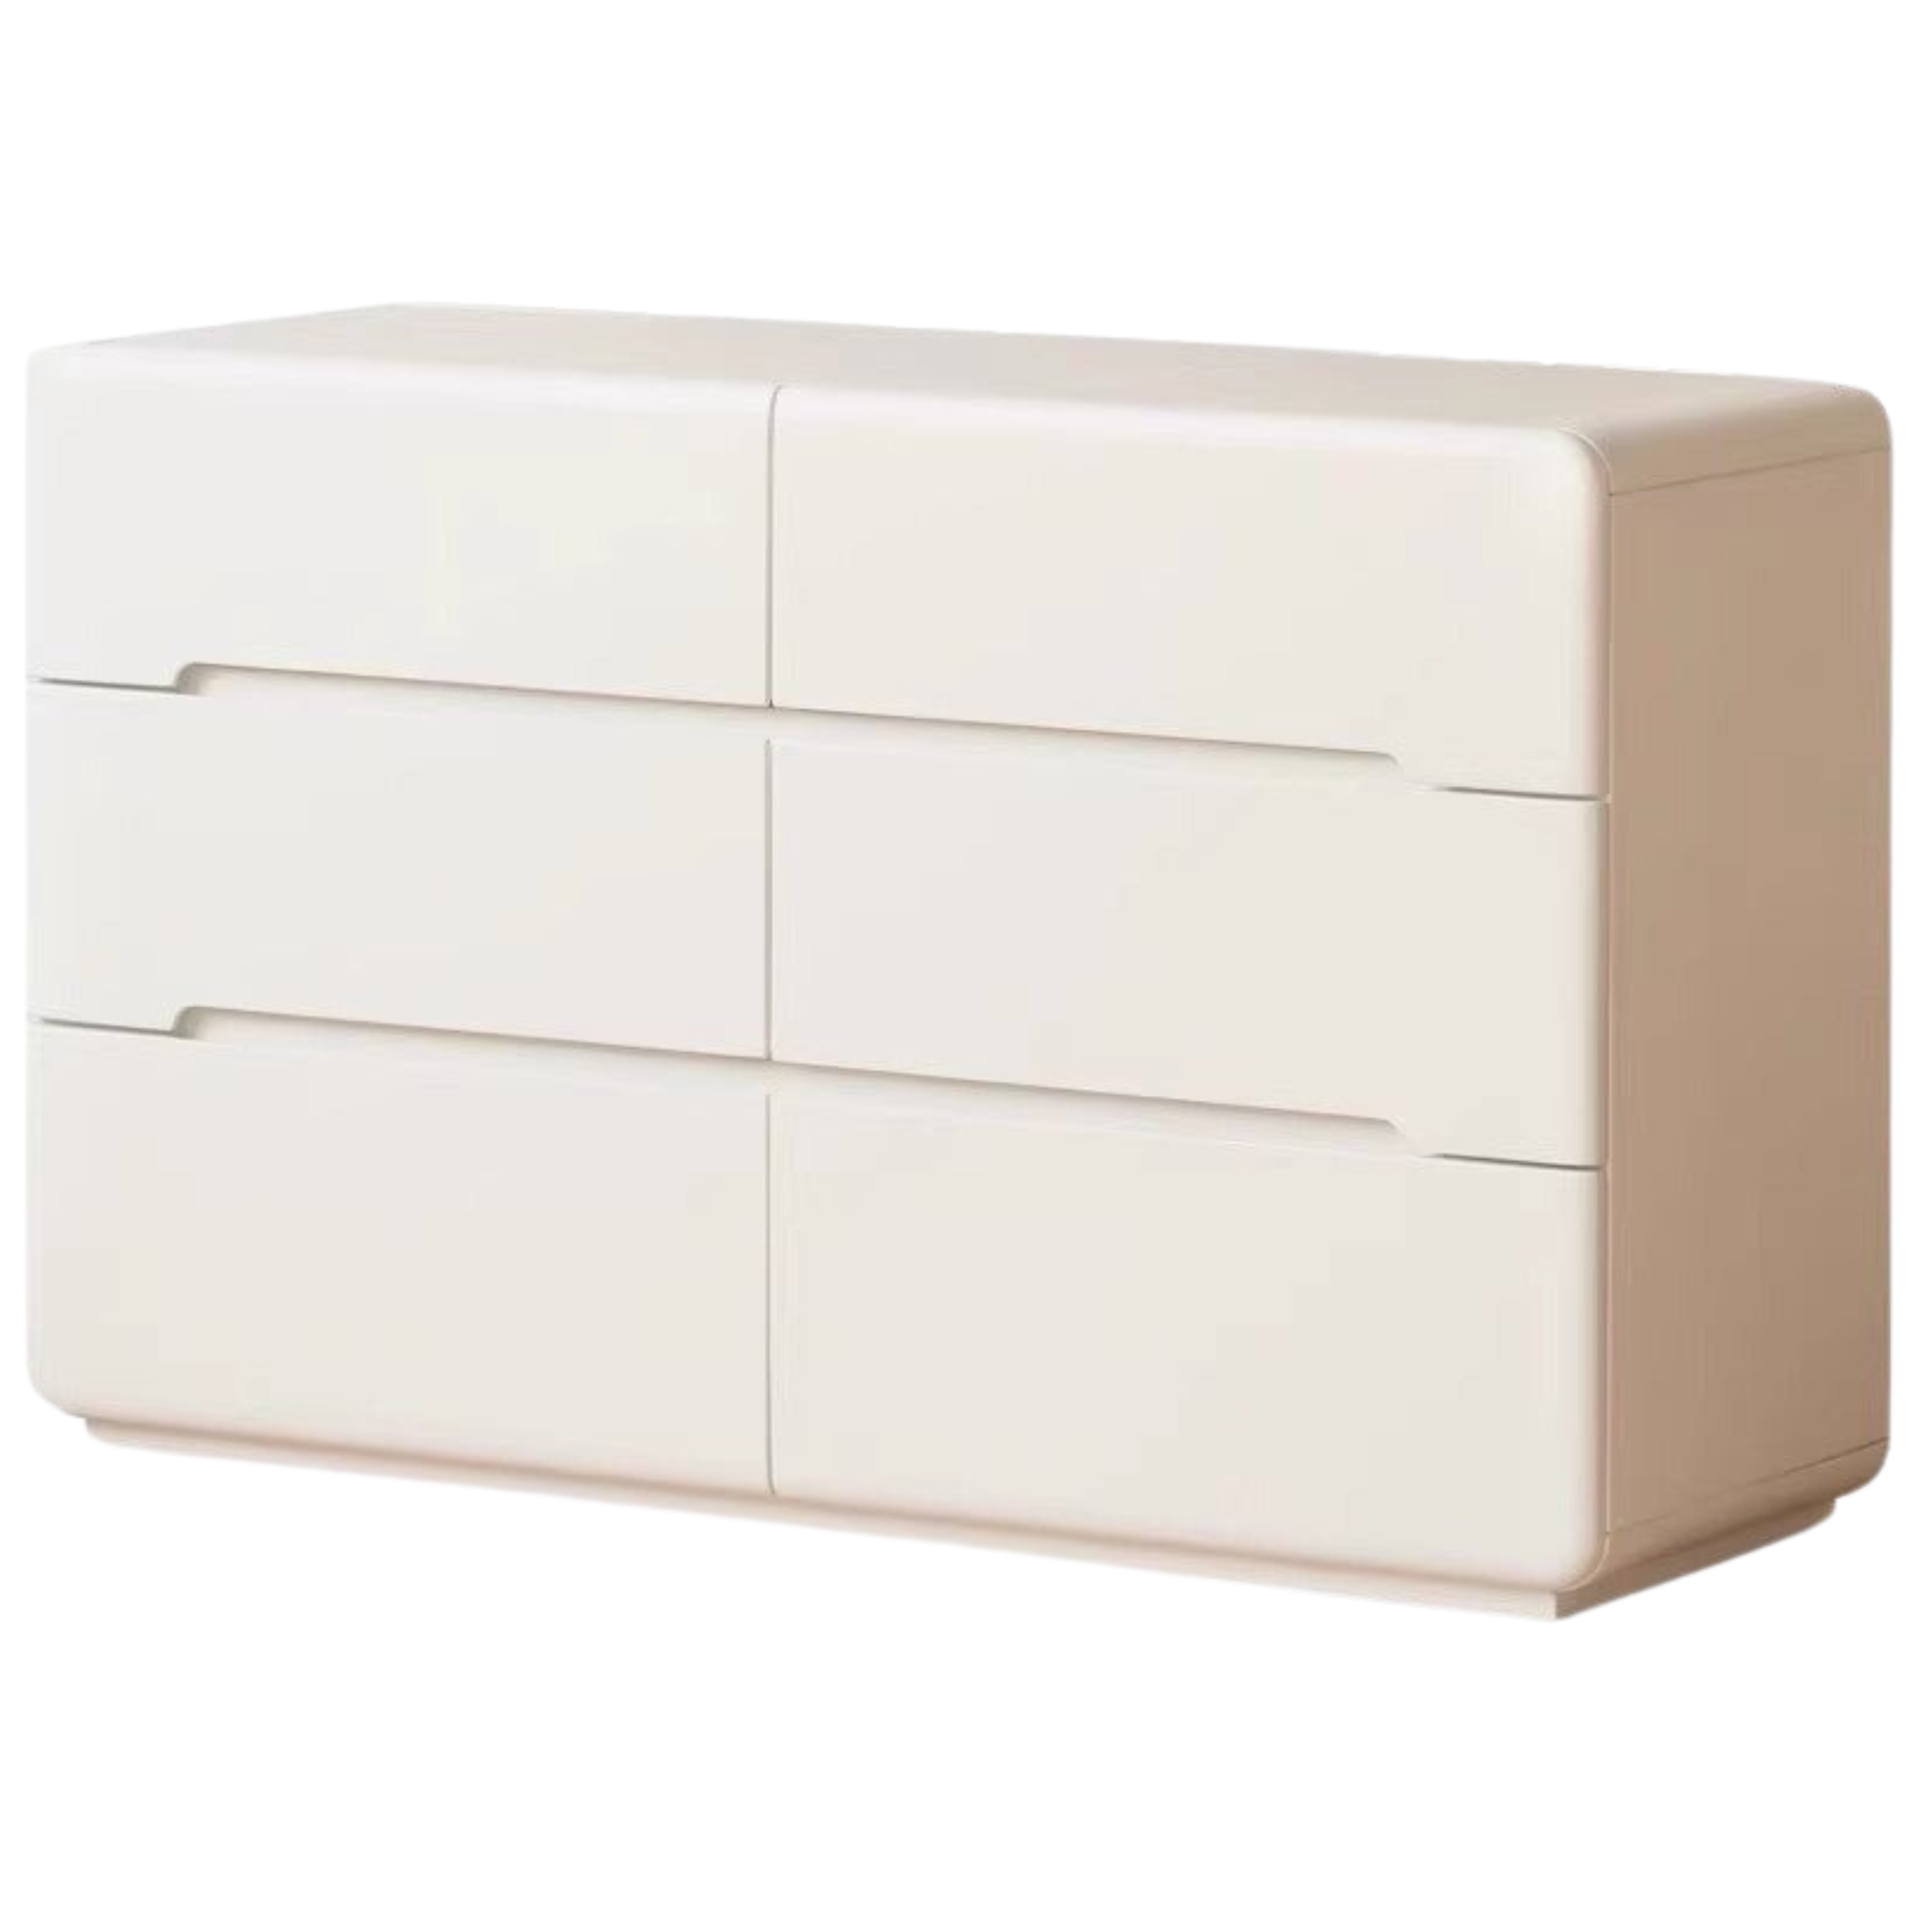 Poplar Solid Wood Storage Cream drawer dresser)